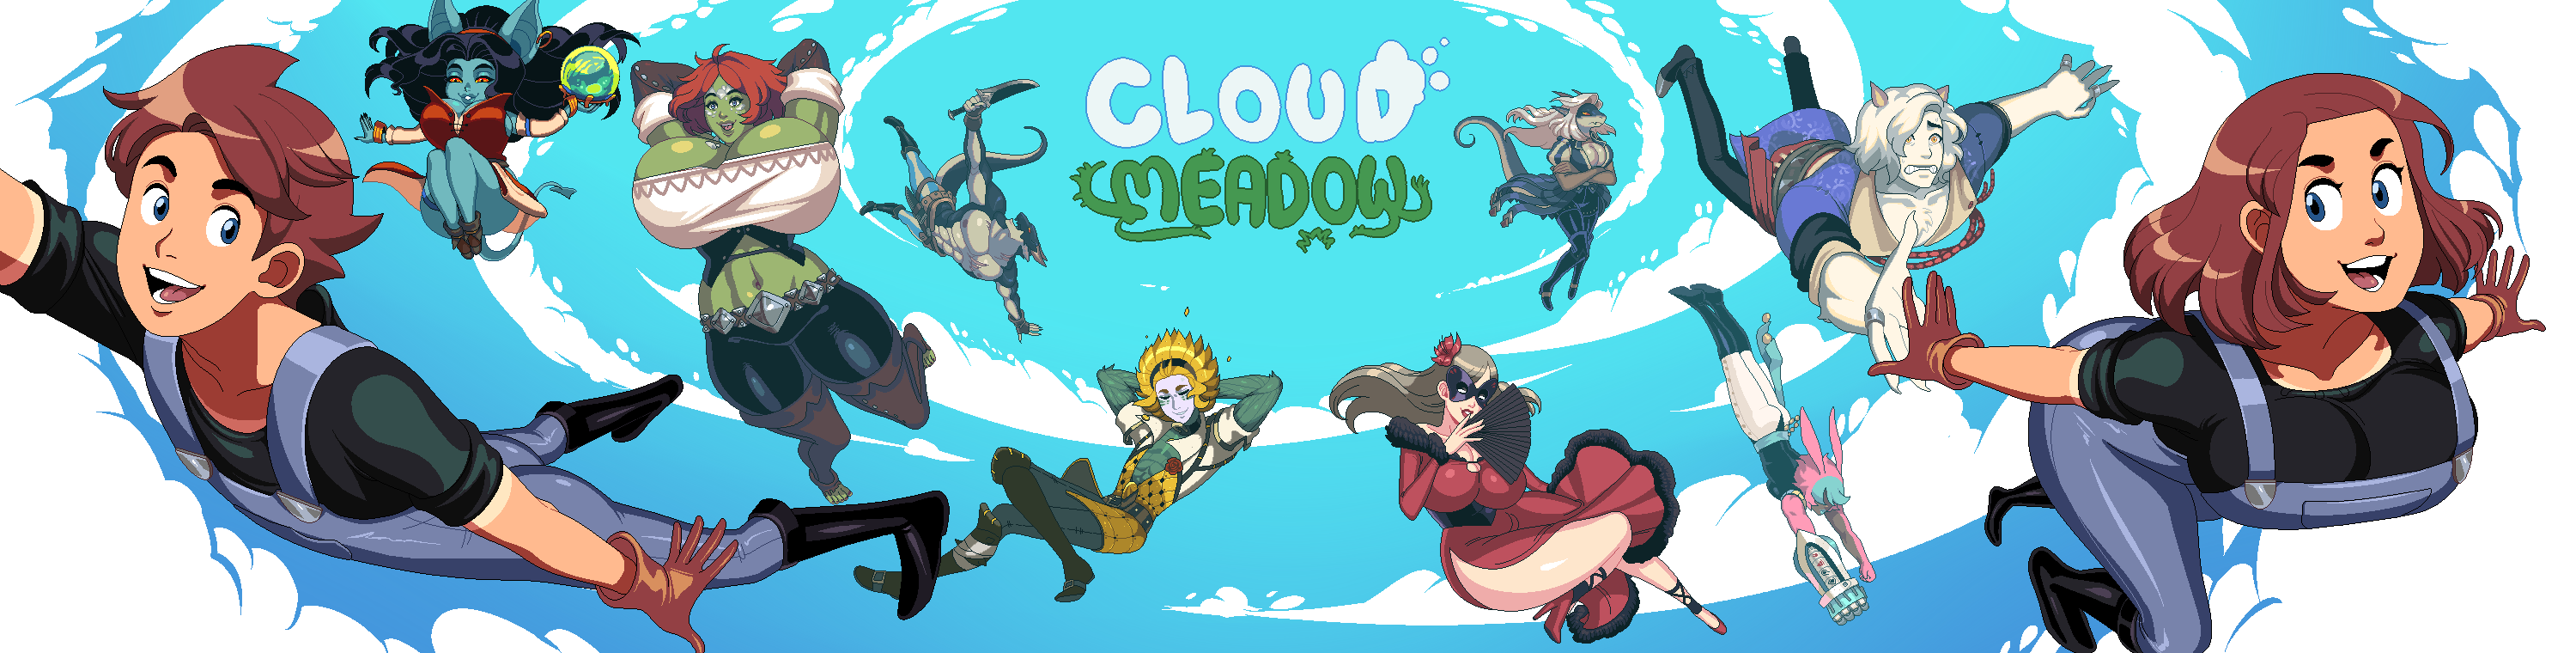 Cloud meadow download